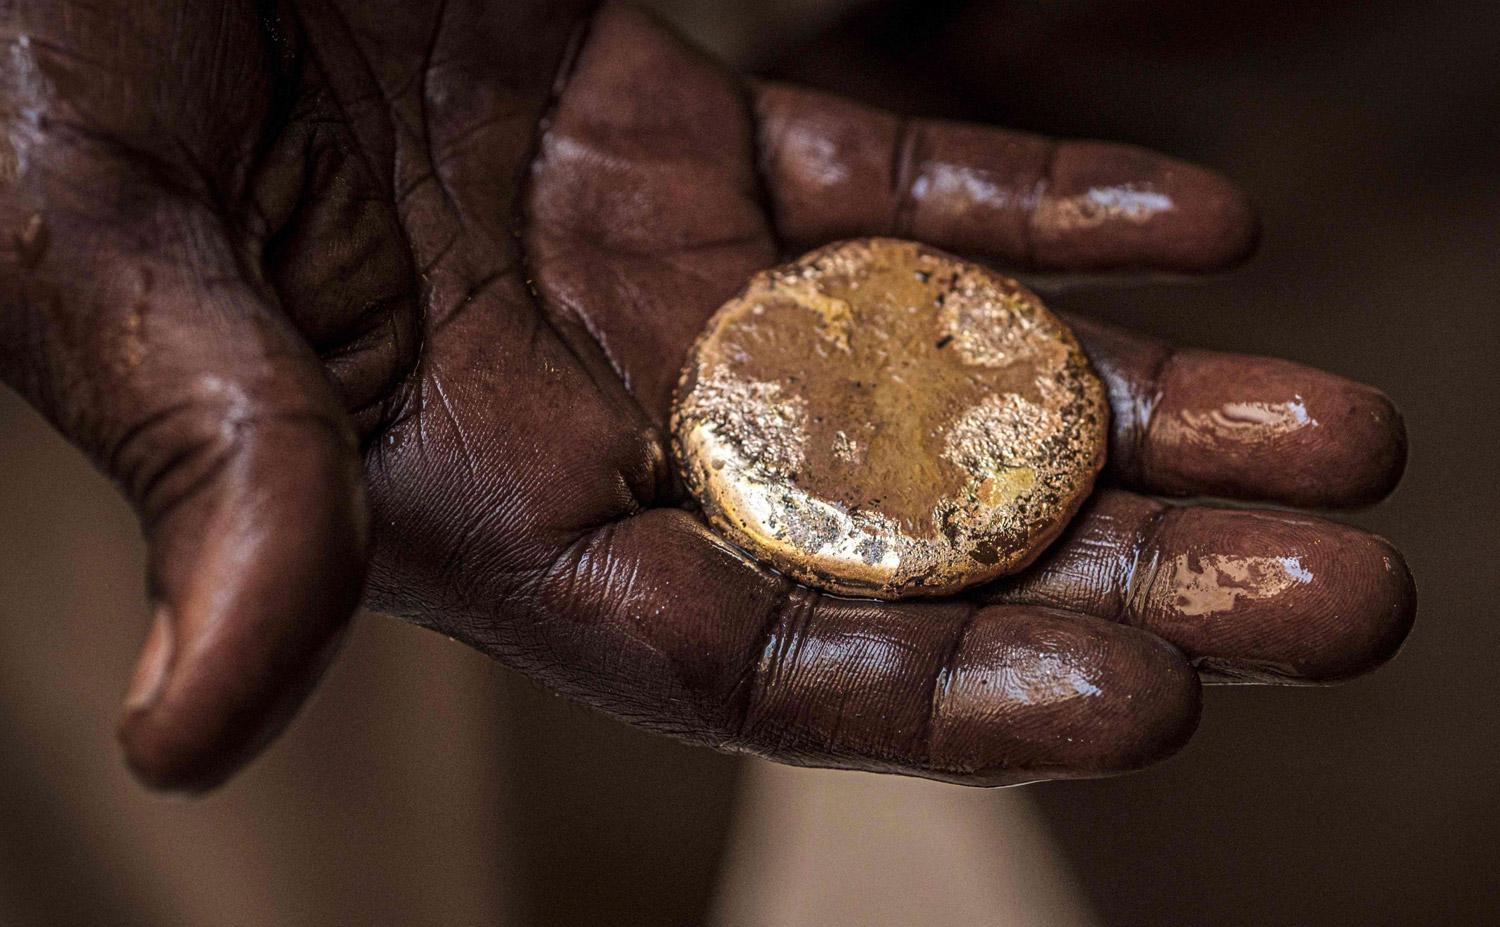 المعدن النفيس يمكنه مساعدة اقتصاد السودان المتدهور